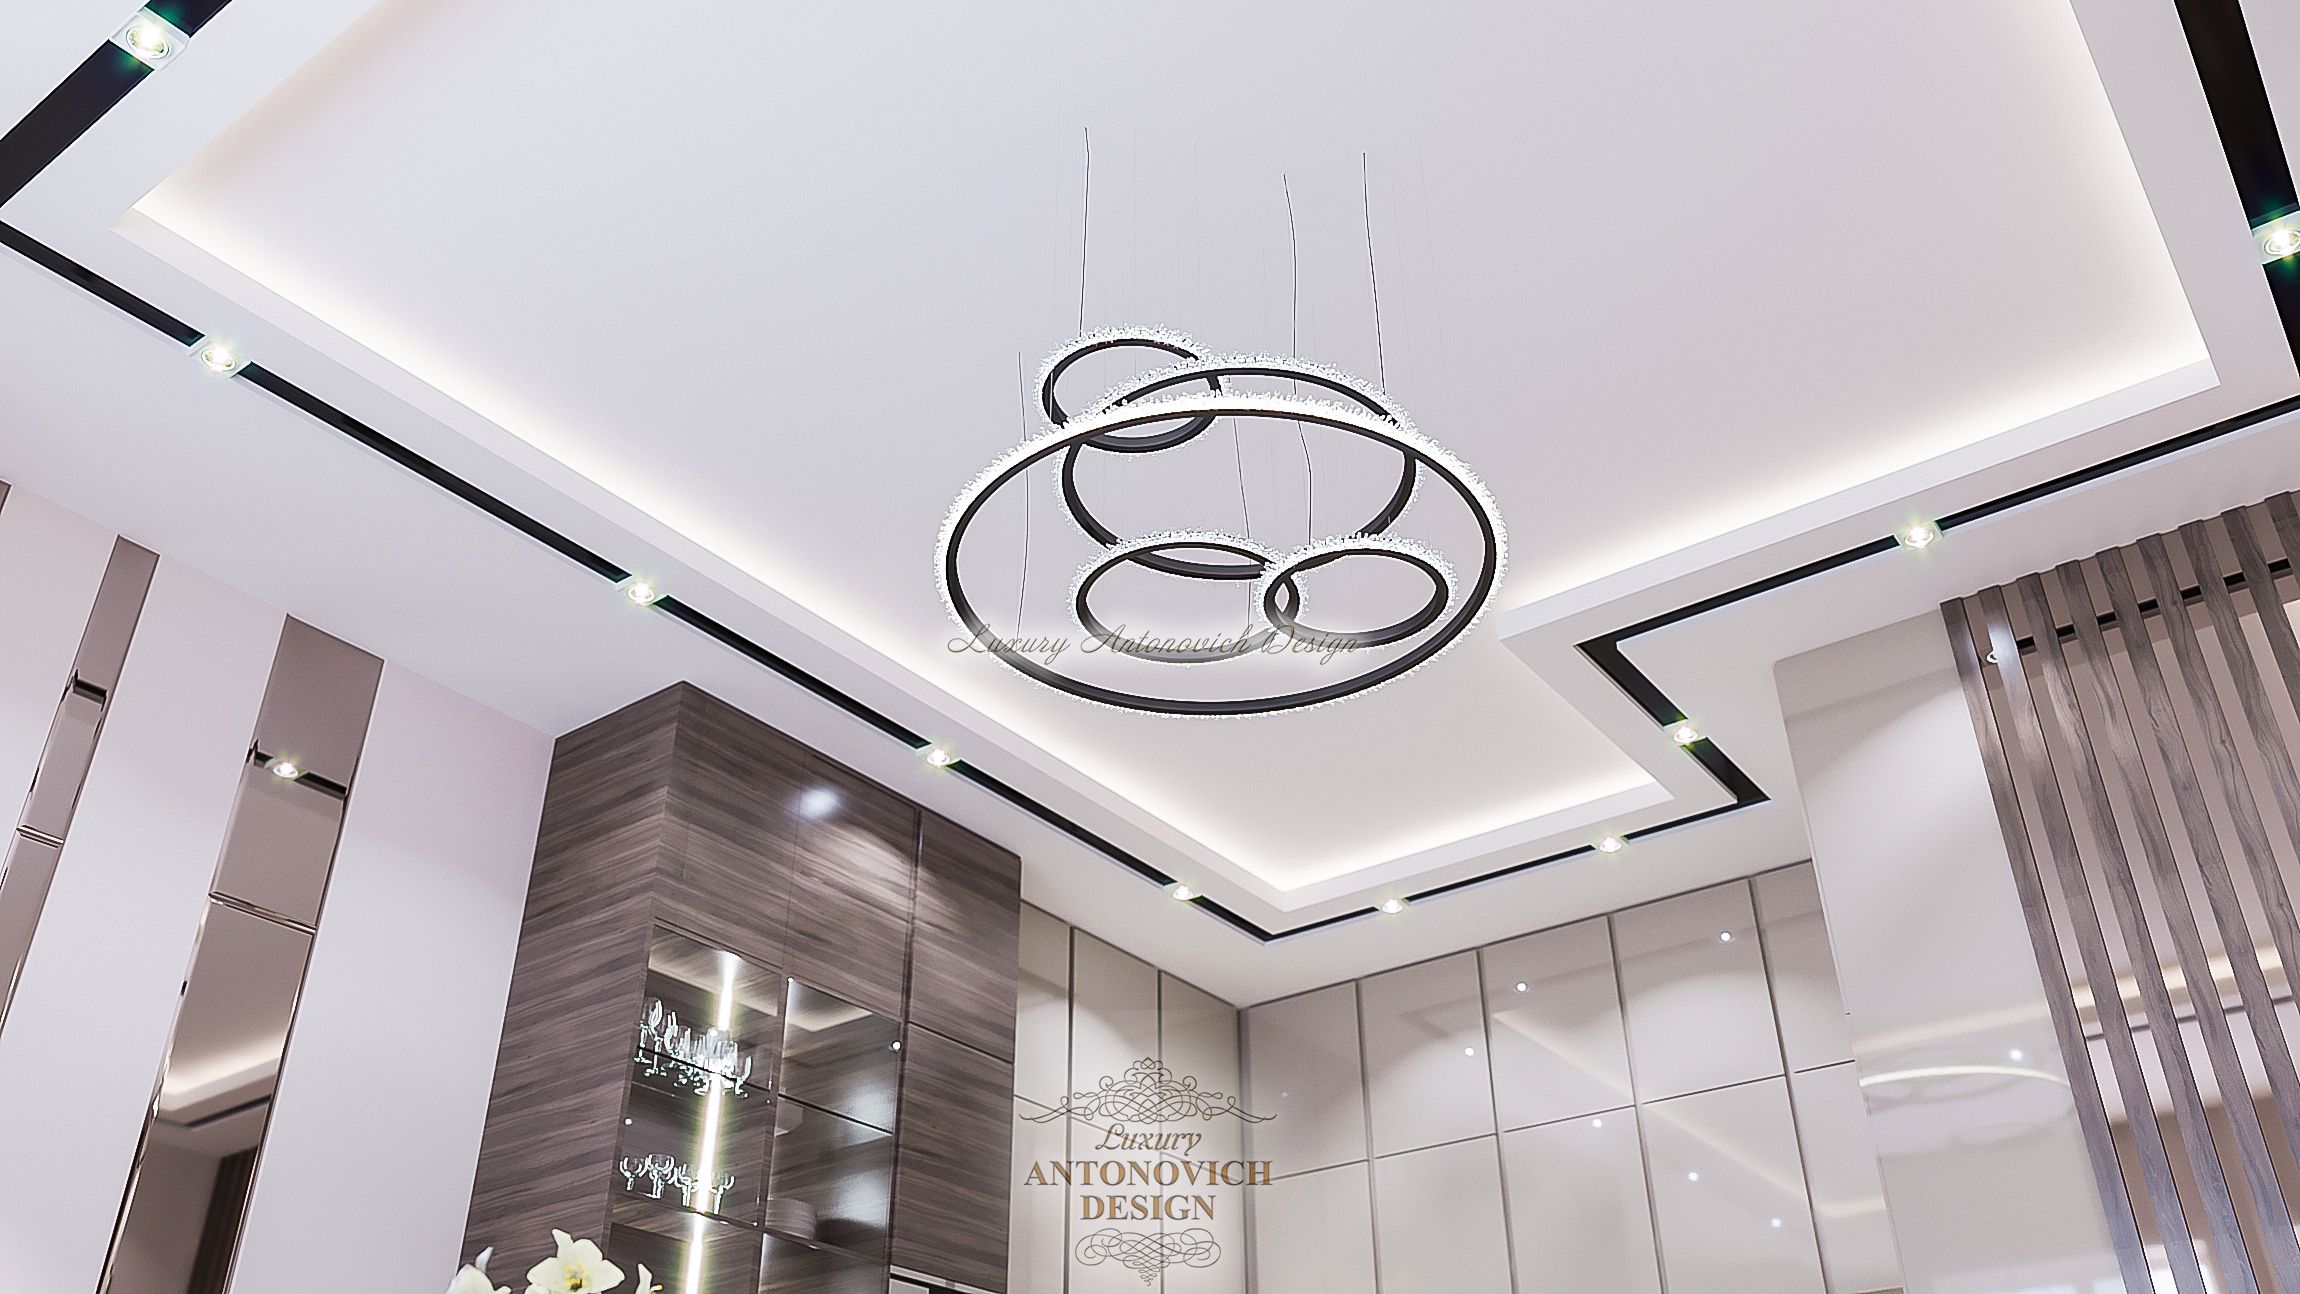 Дизайн интерьера Кухня гостинная в Праге1 (9), Luxury Antonovich Design